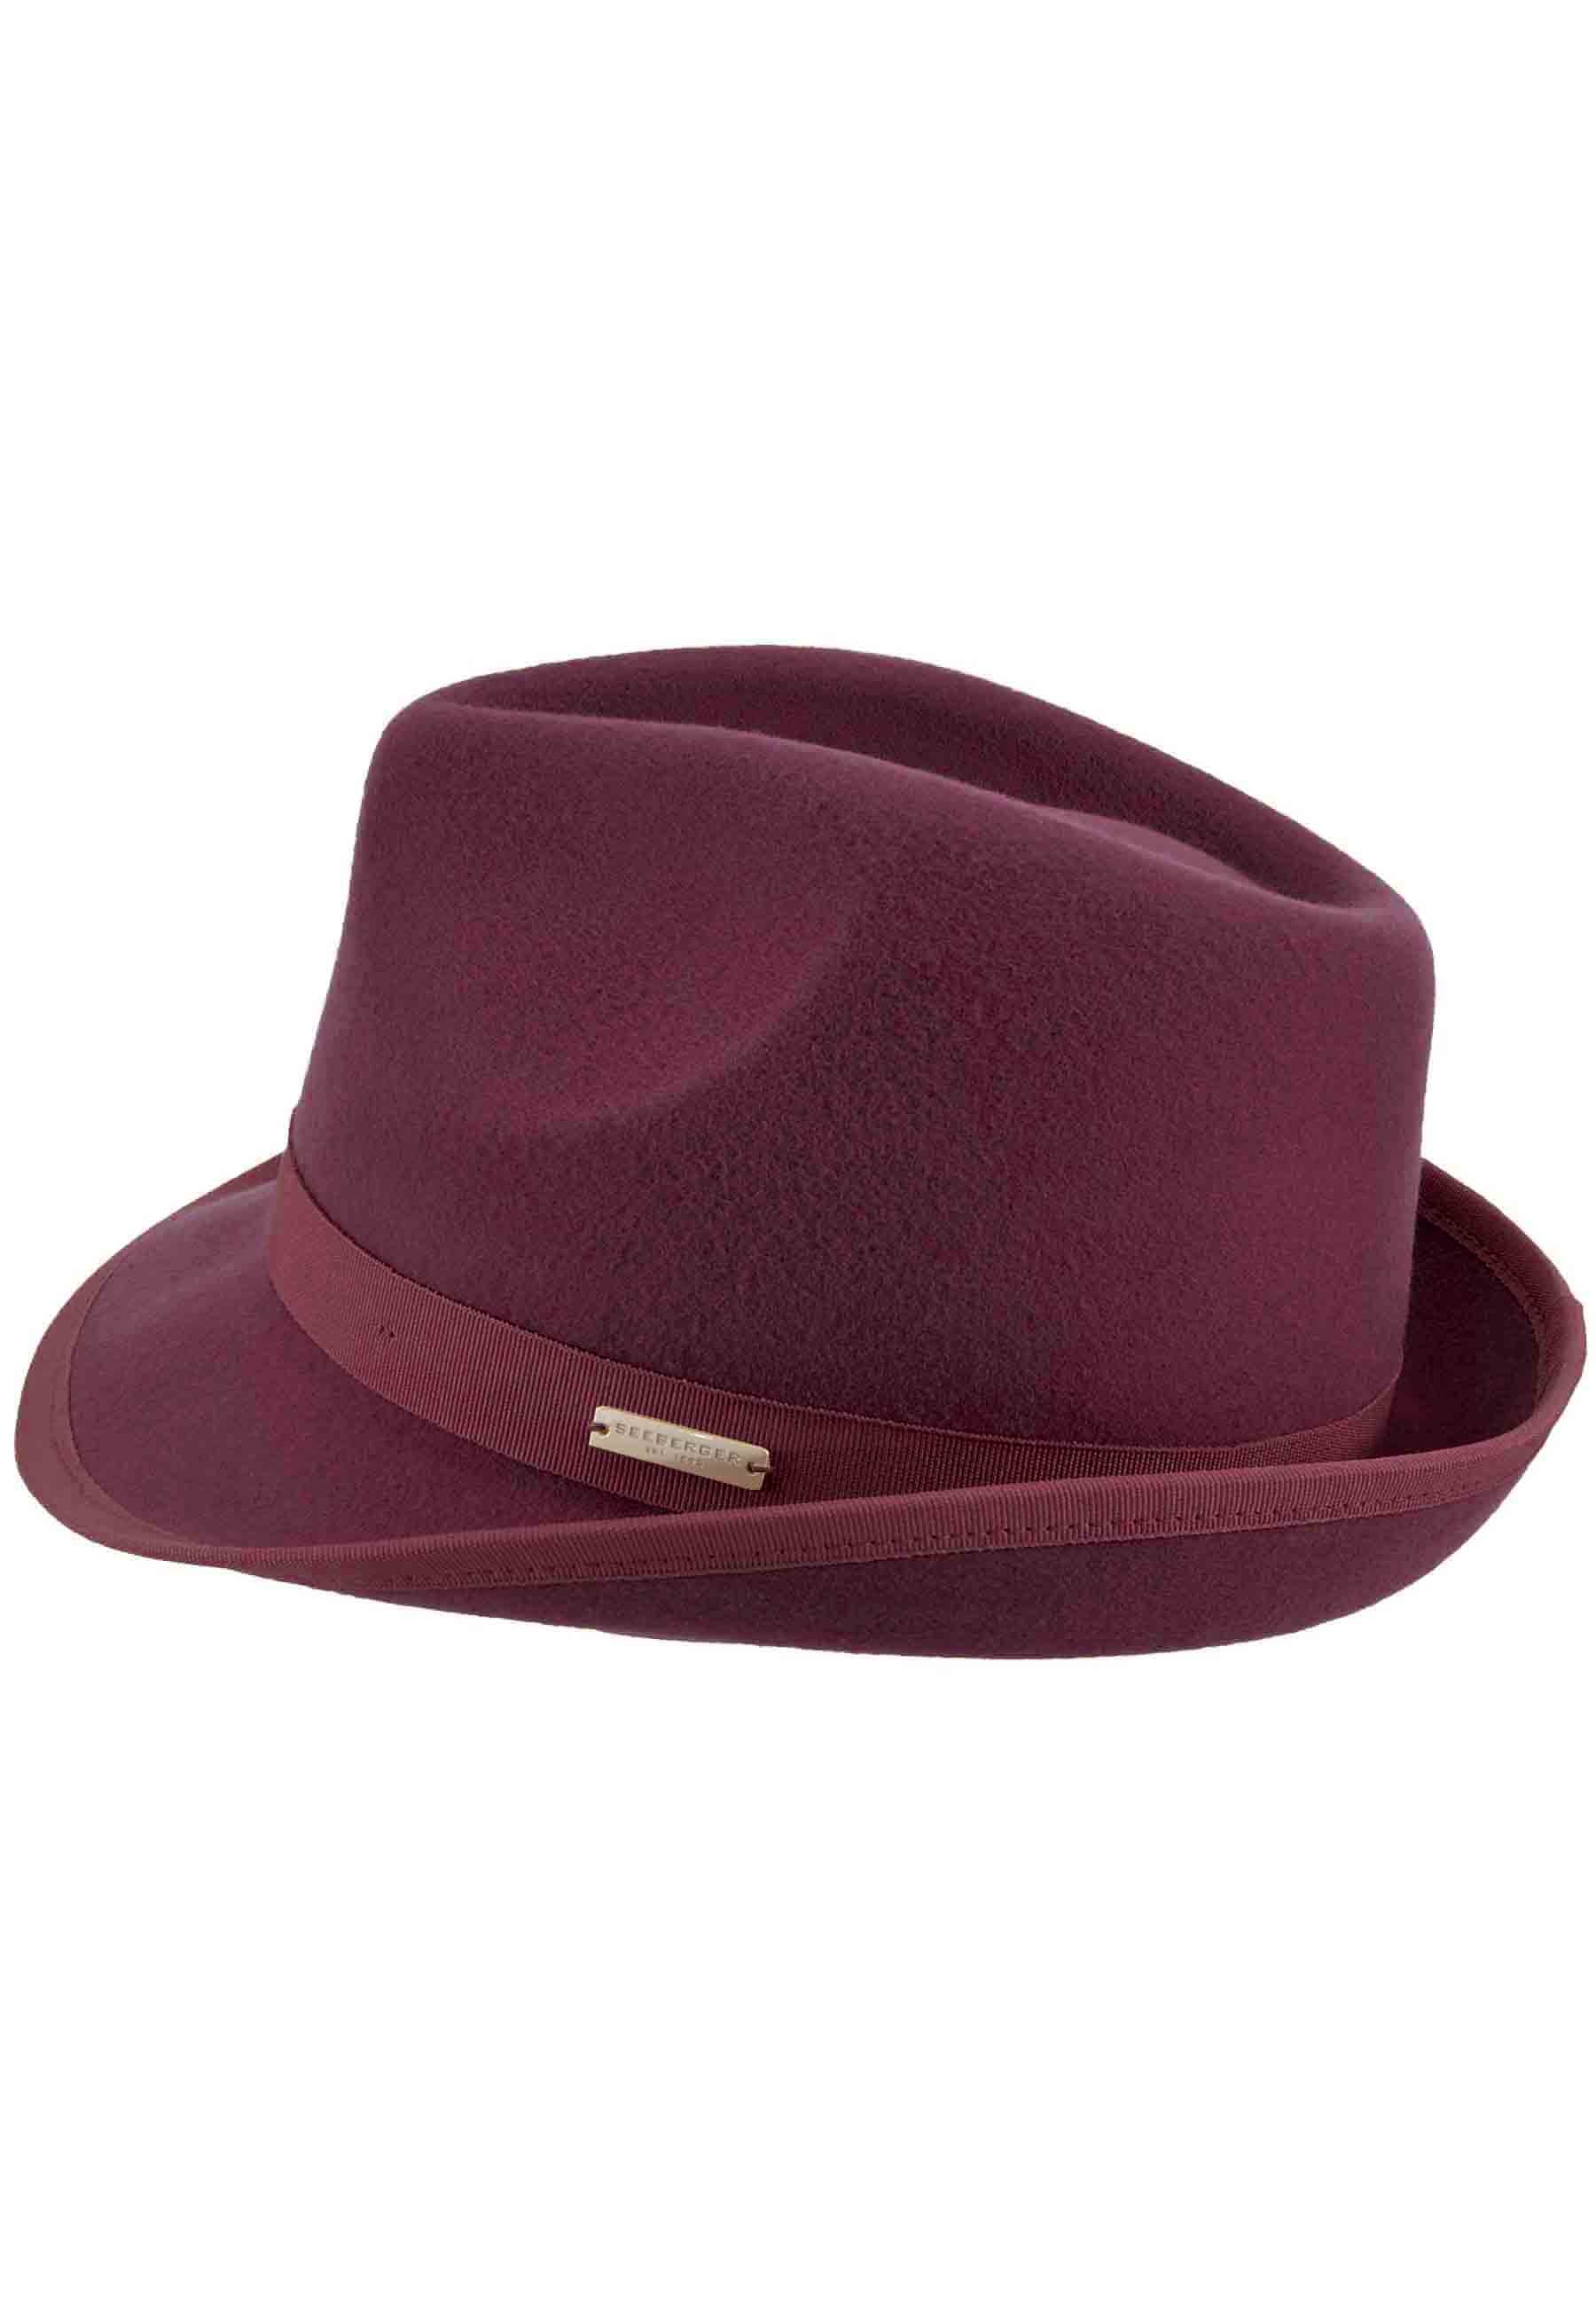 Women's Trilby hat in burgundy wool